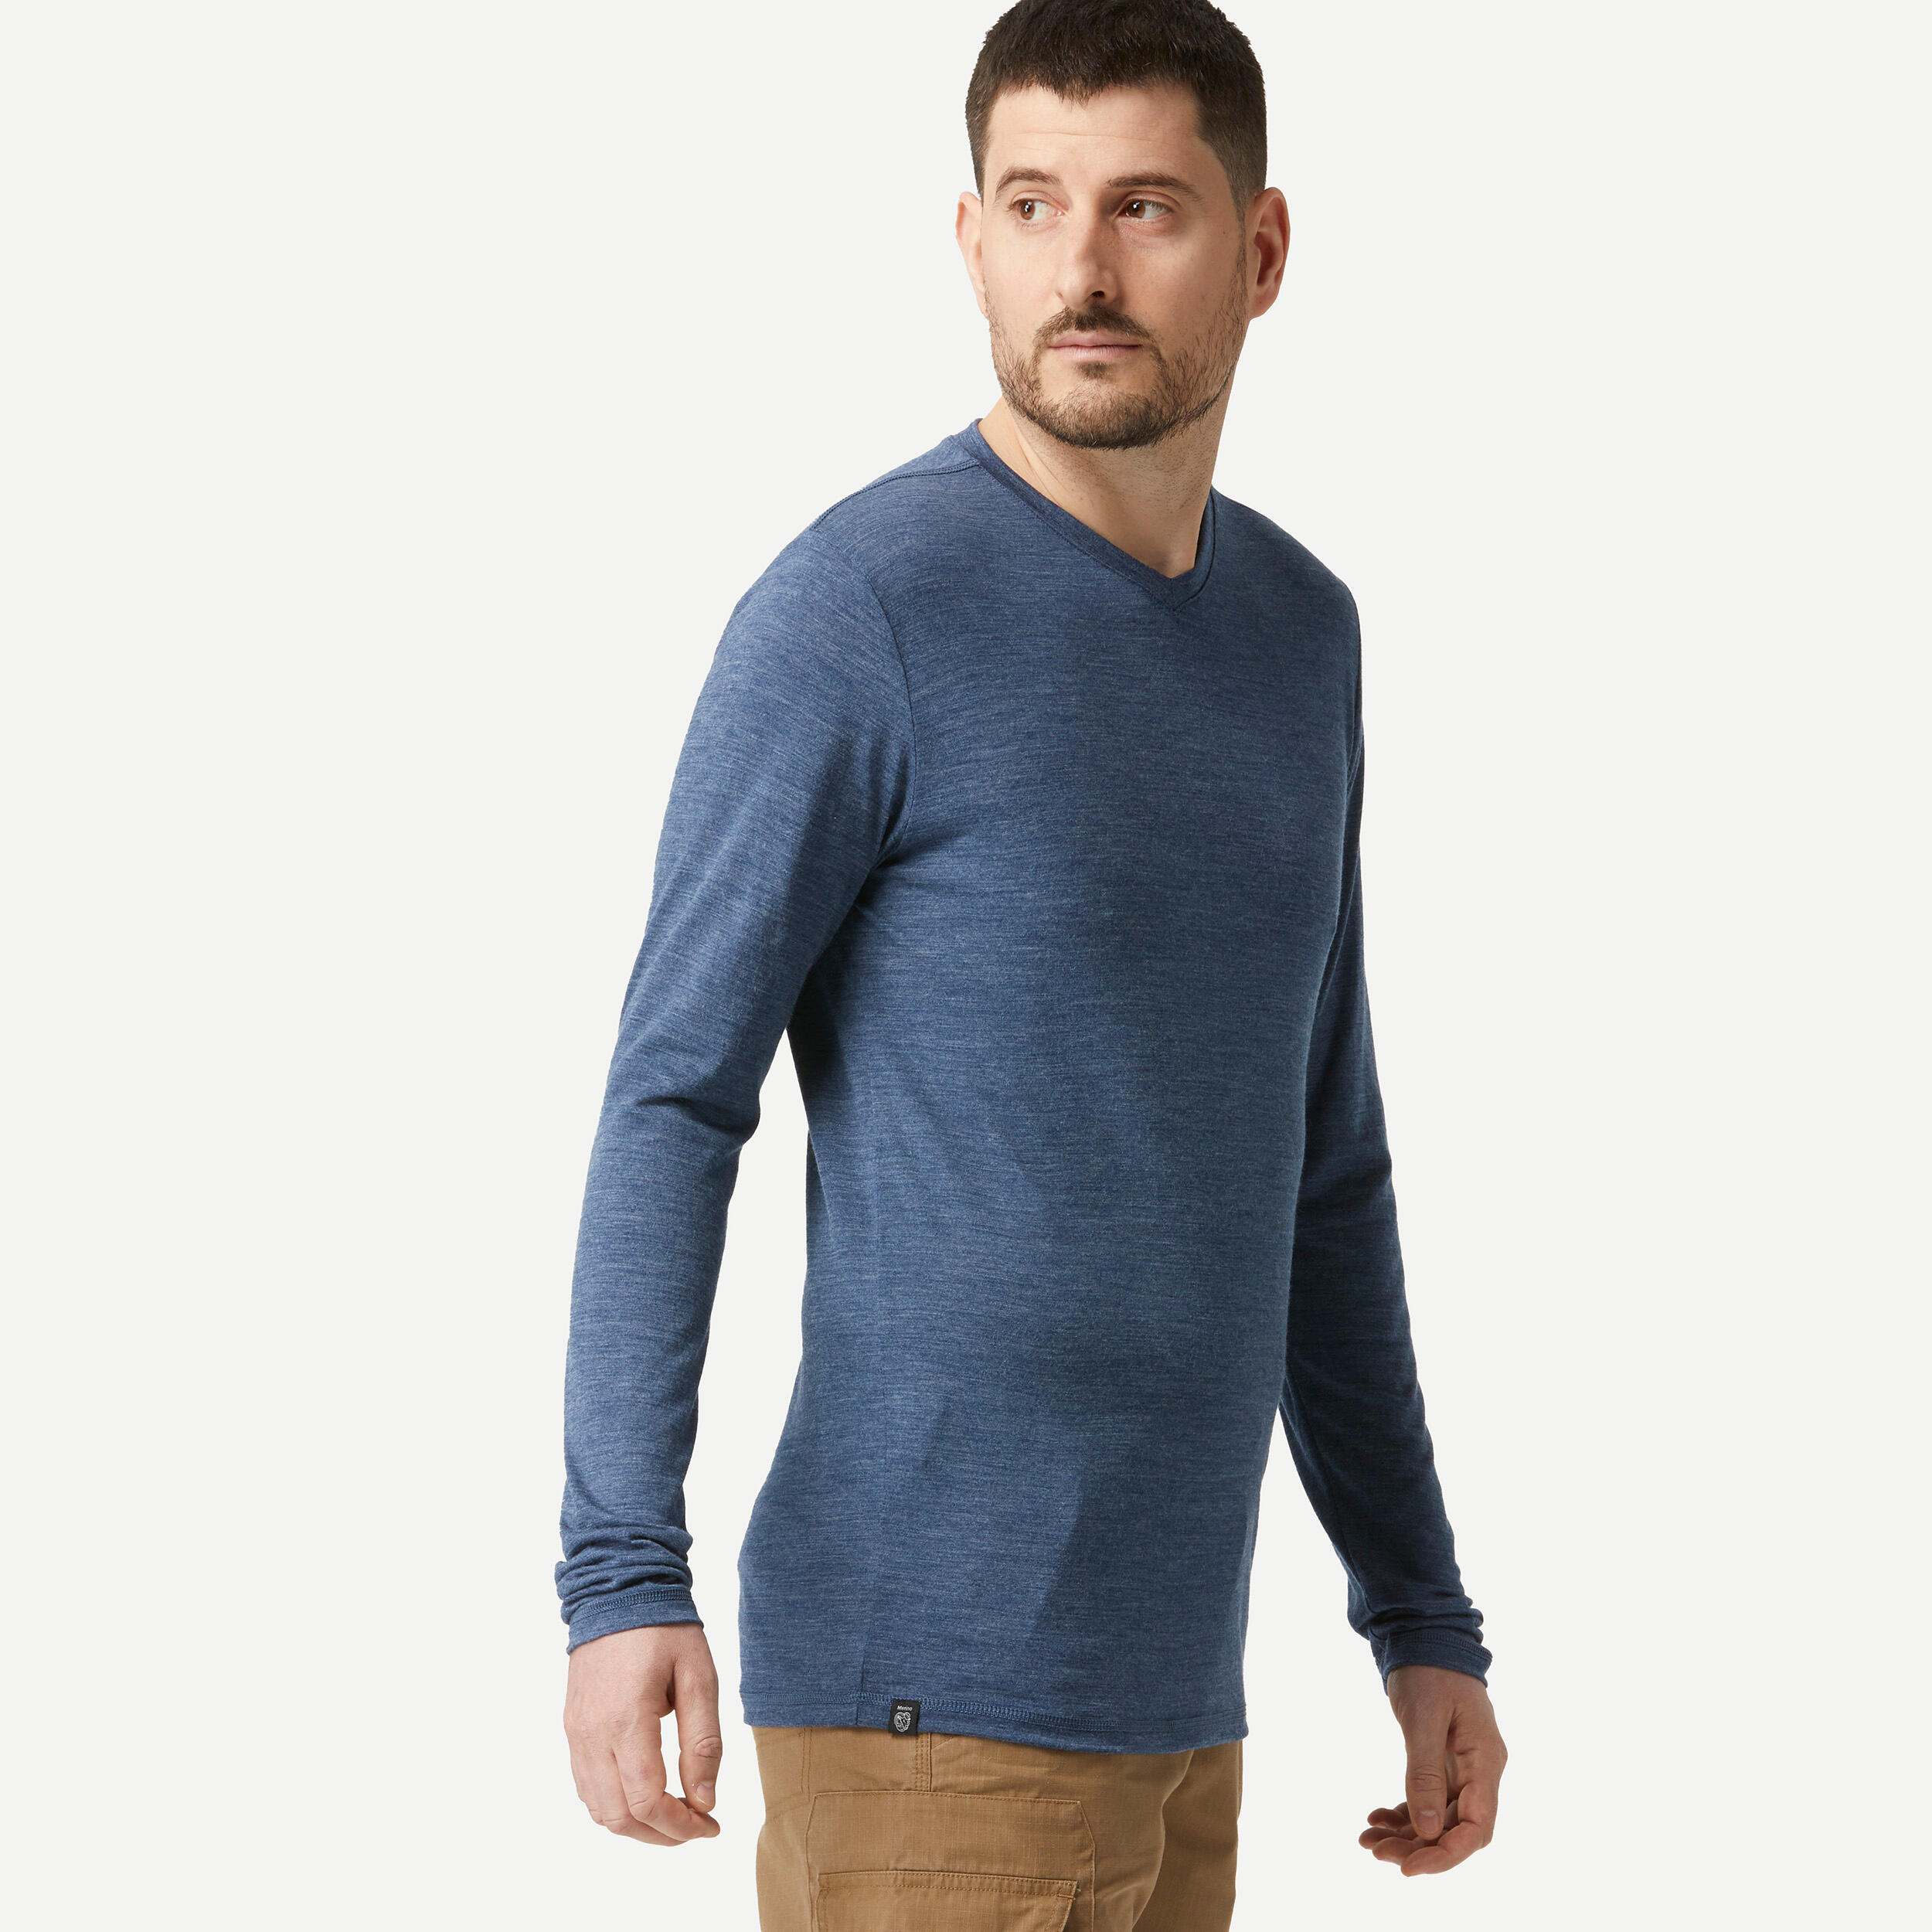 Men's long-sleeved travel trekking Merino wool T-shirt - TRAVEL 500 - blue 2/6